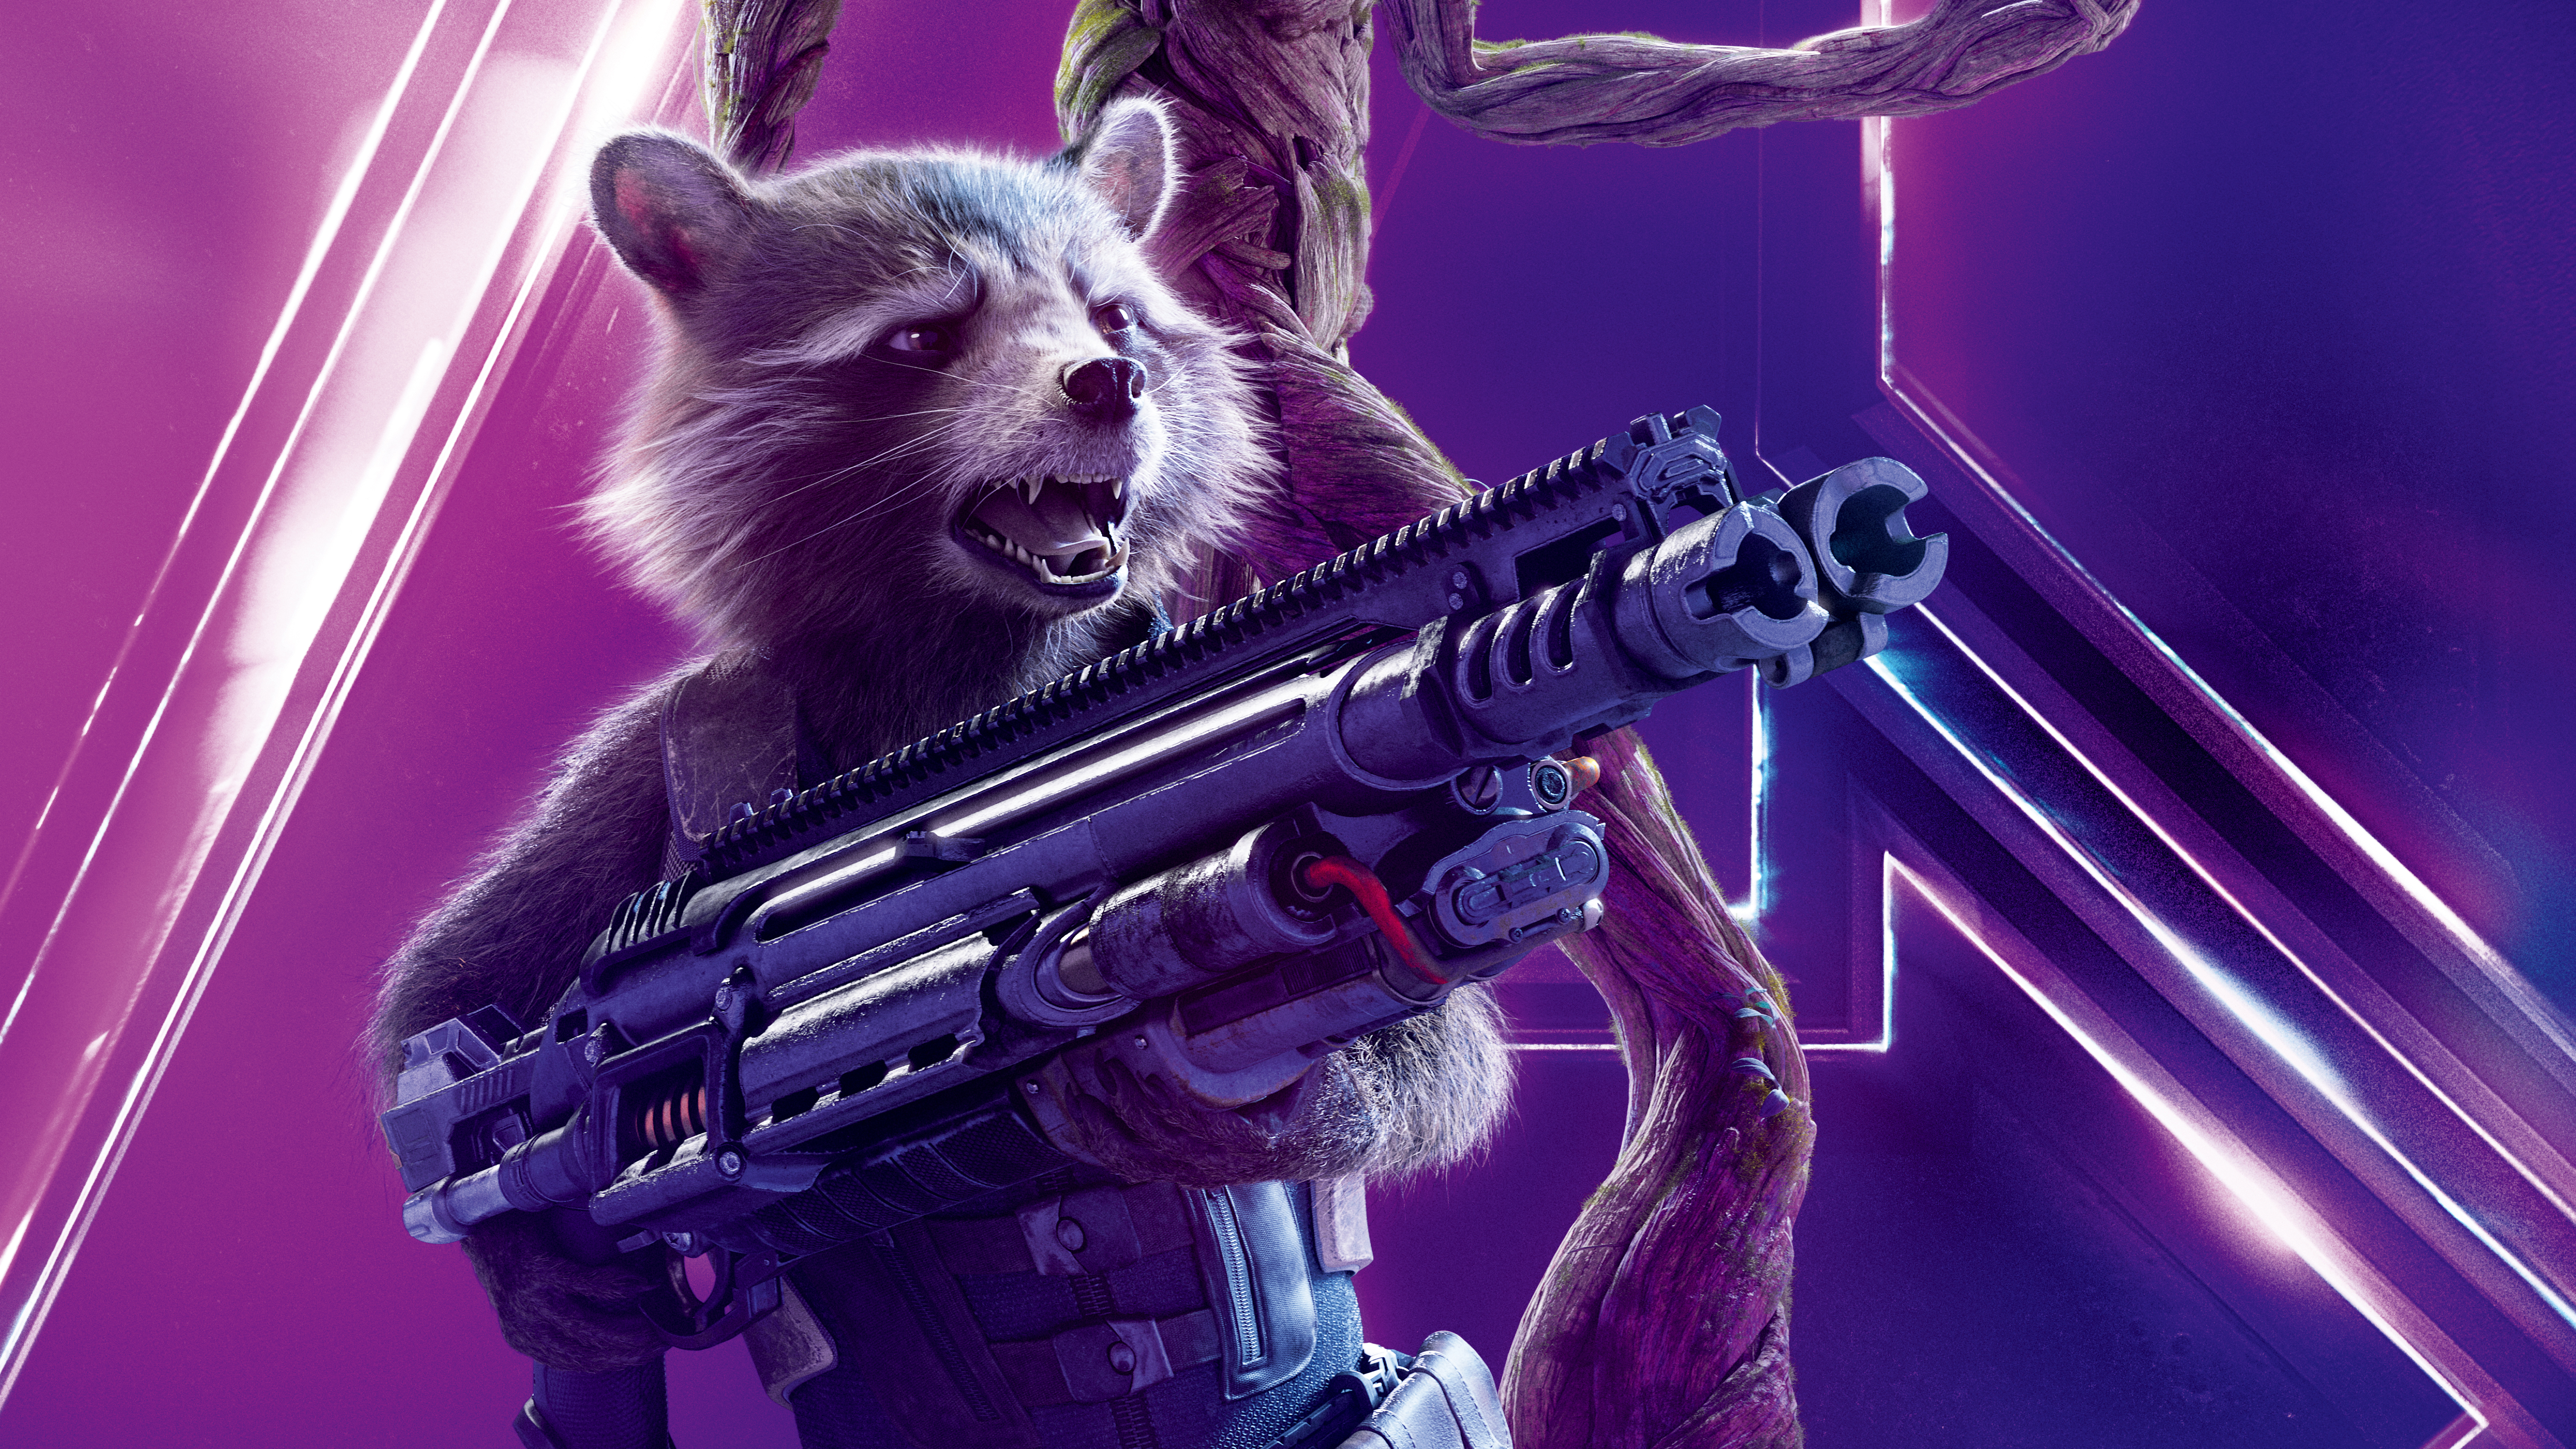 Rocket Raccoon in Avengers Infinity War 4K 8K